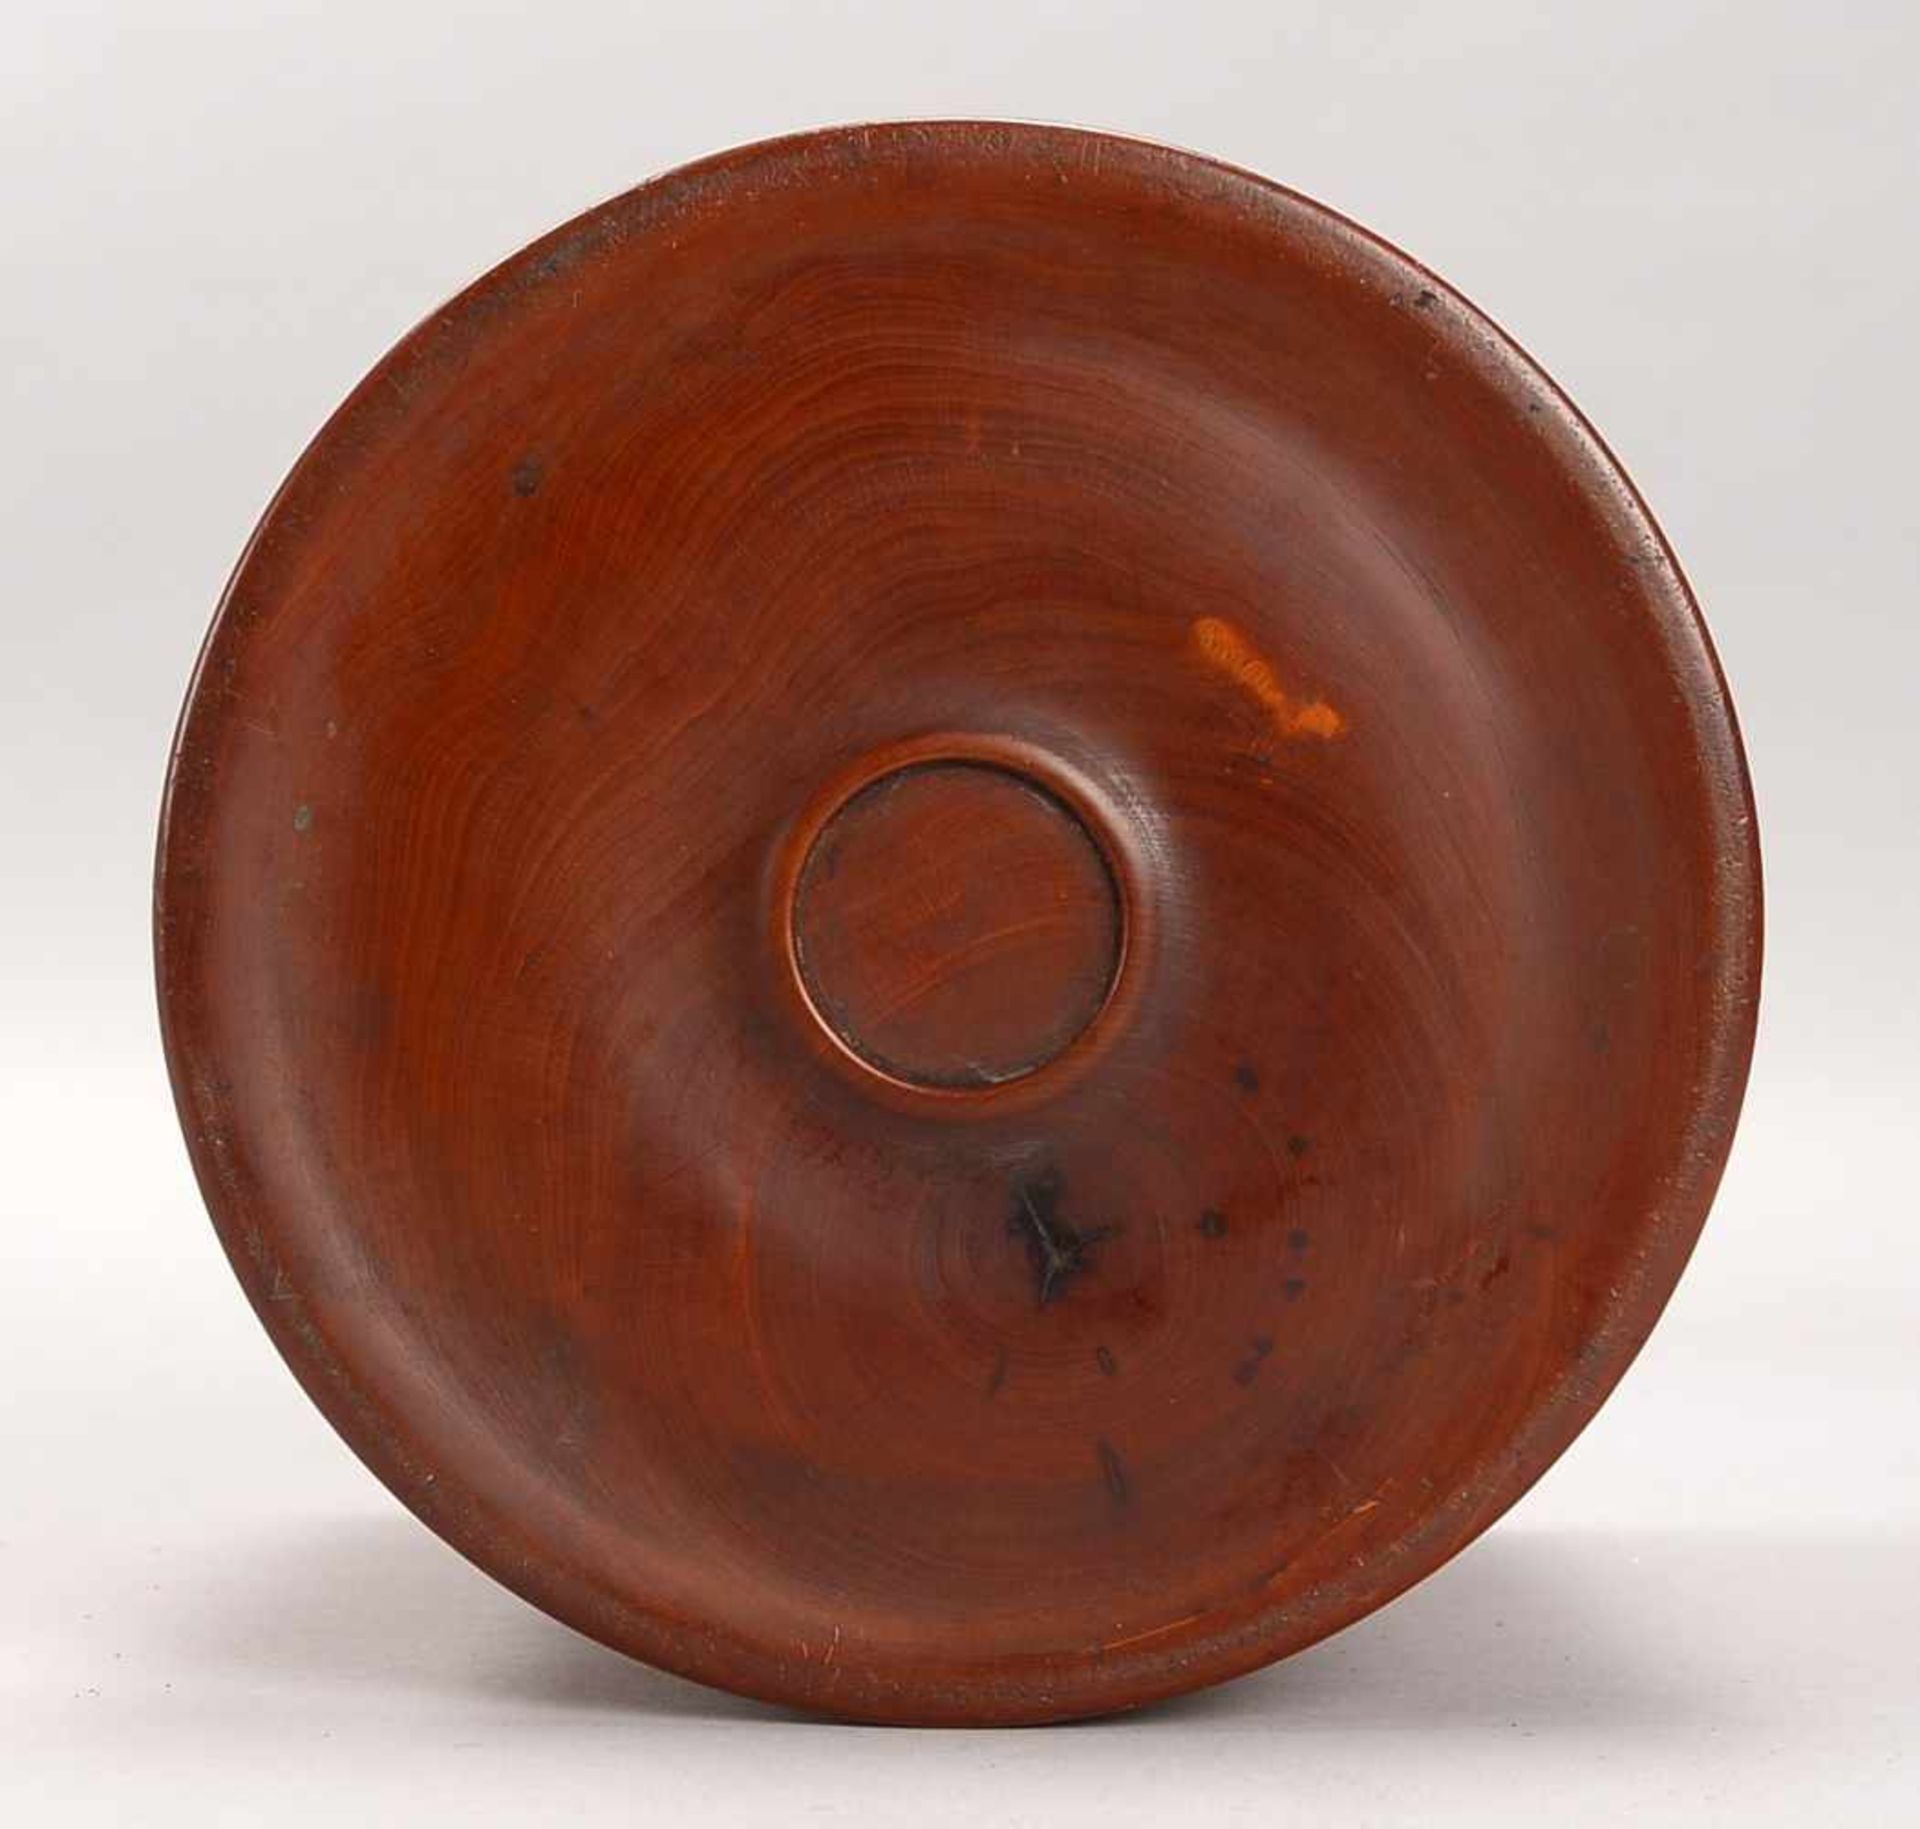 Pinselhalter, China, Holz, schlichter Zylinderkorpus; Höhe 15 cm, Durchmesser Ø 15 cm - Bild 3 aus 3